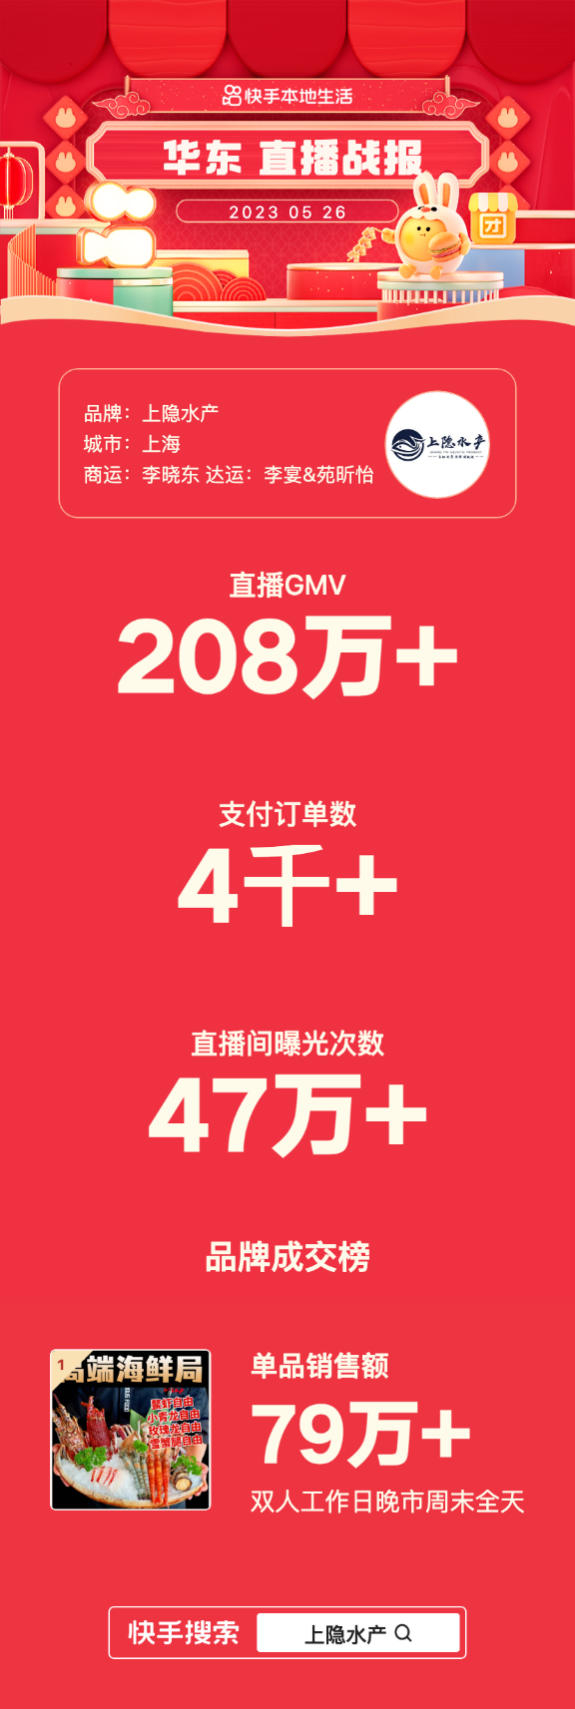 单场直播GMV超208万，上海高端海鲜自助上隐水产开拓快手本地生活营销新阵地